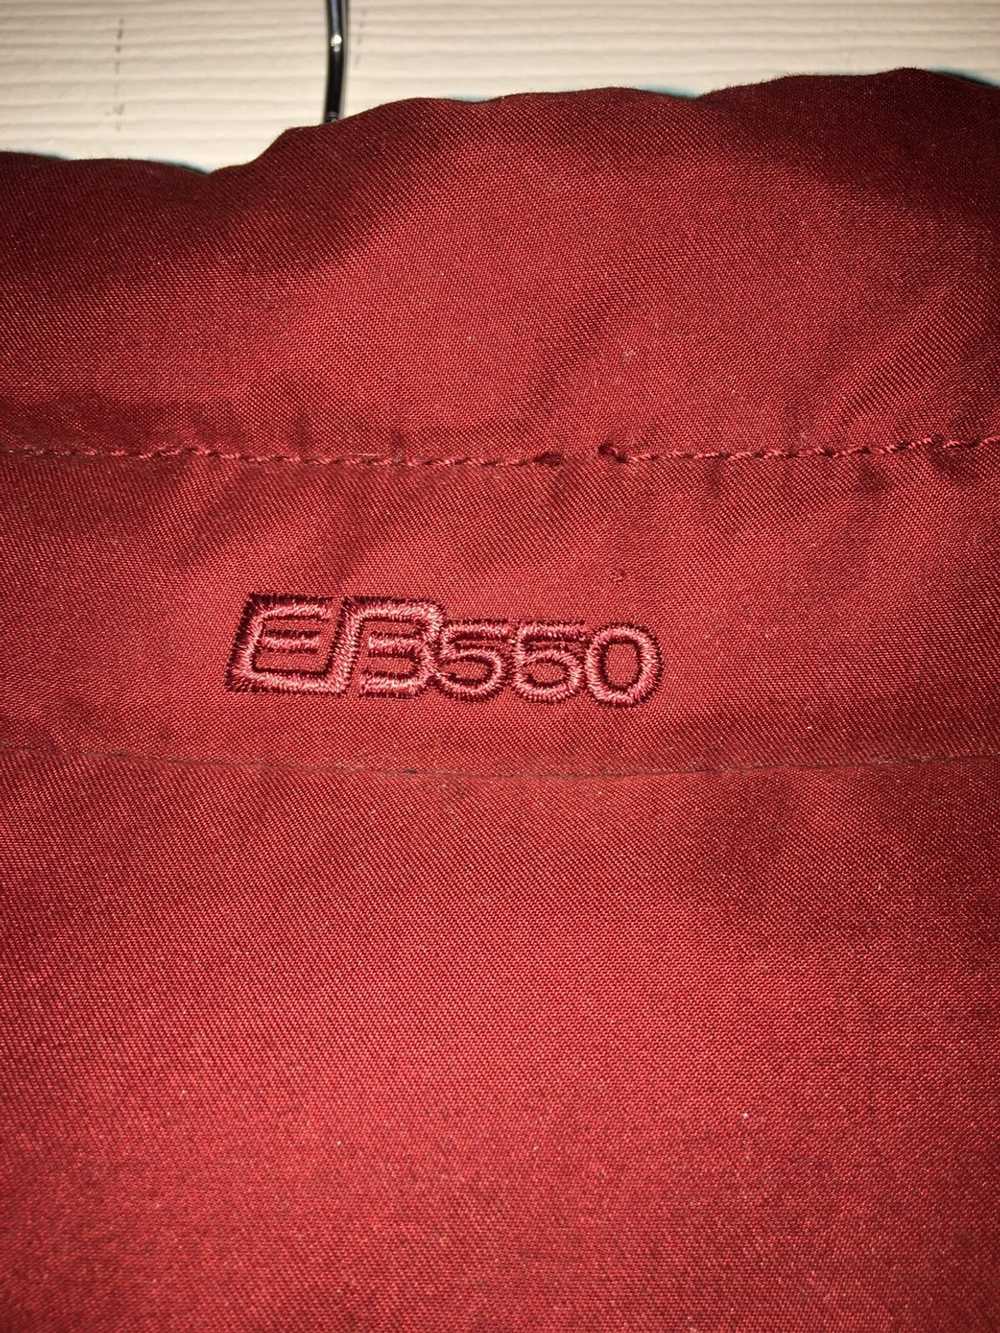 Eddie Bauer Eddie Bauer EB550 Premium Down Vest - image 4